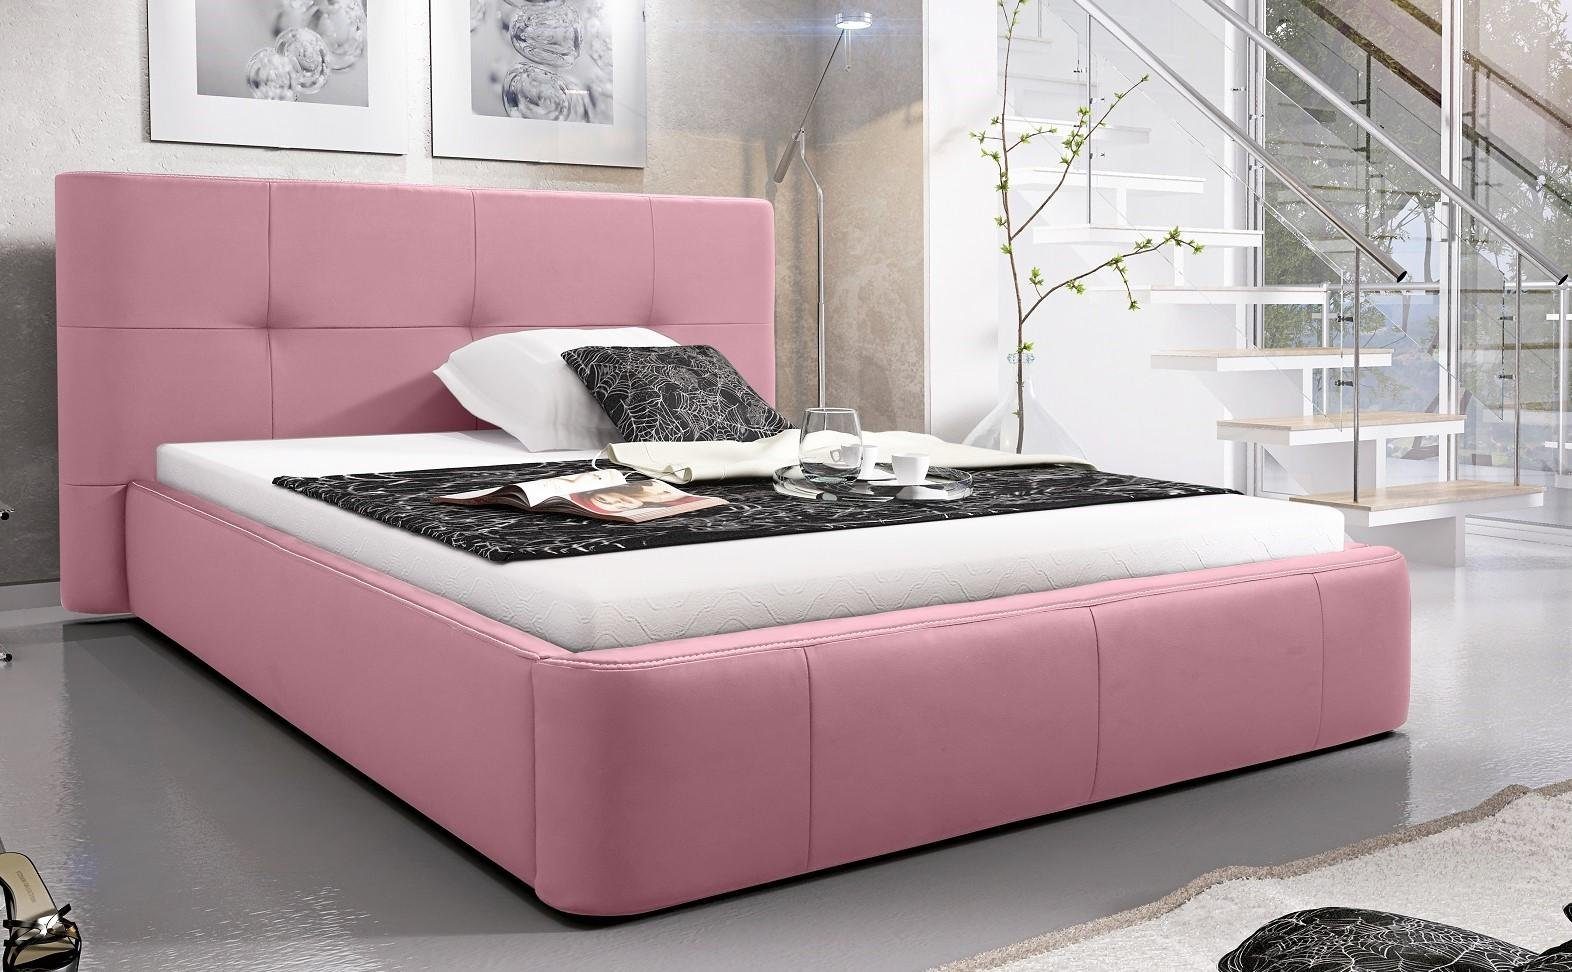 JVmoebel Bett, Bett Polster Design Luxus Doppel Hotel Betten Schlaf Zimmer Leder Rosa